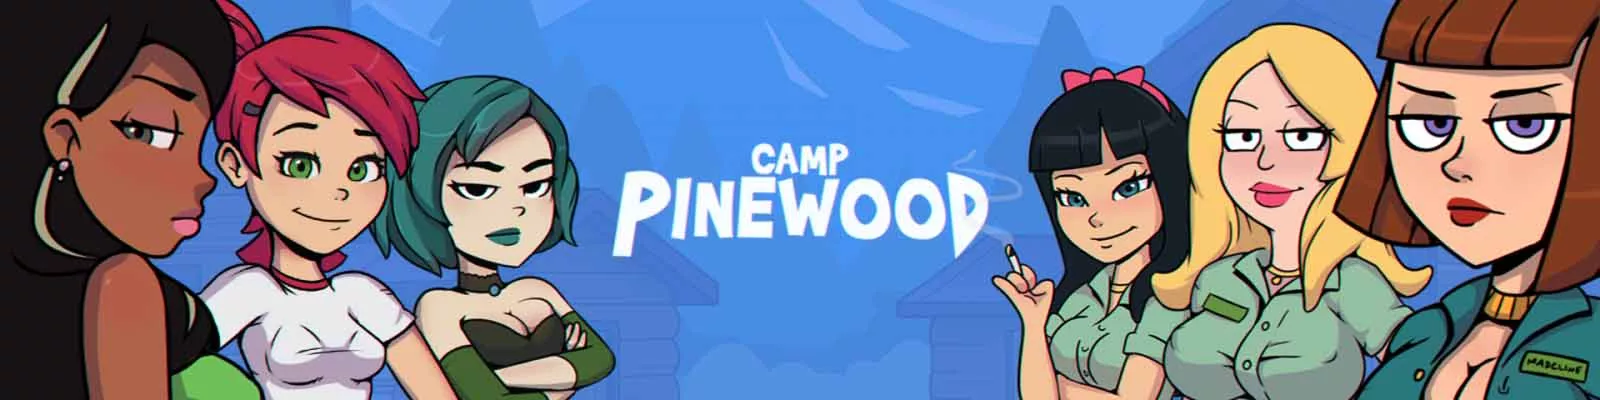 Game dewasa Camp Pinewood